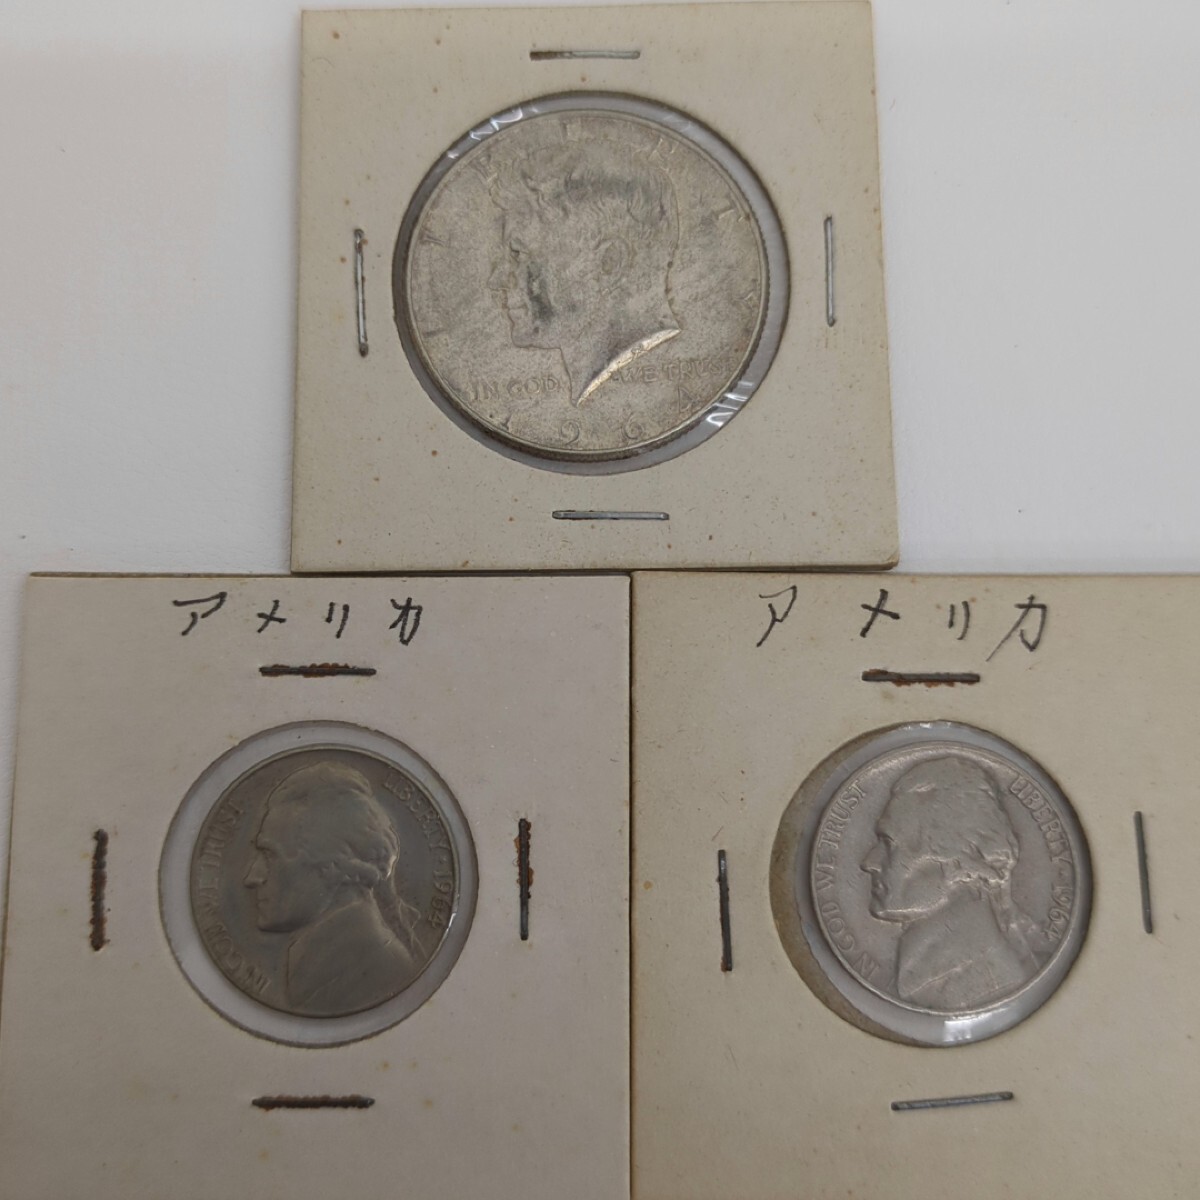 アメリカ 銀貨 1964年 ケネディ HALF DOLLAR ハーフダラー 50セント 1961 5セント×2 計3枚セット アンティーク 硬貨 外貨の画像1